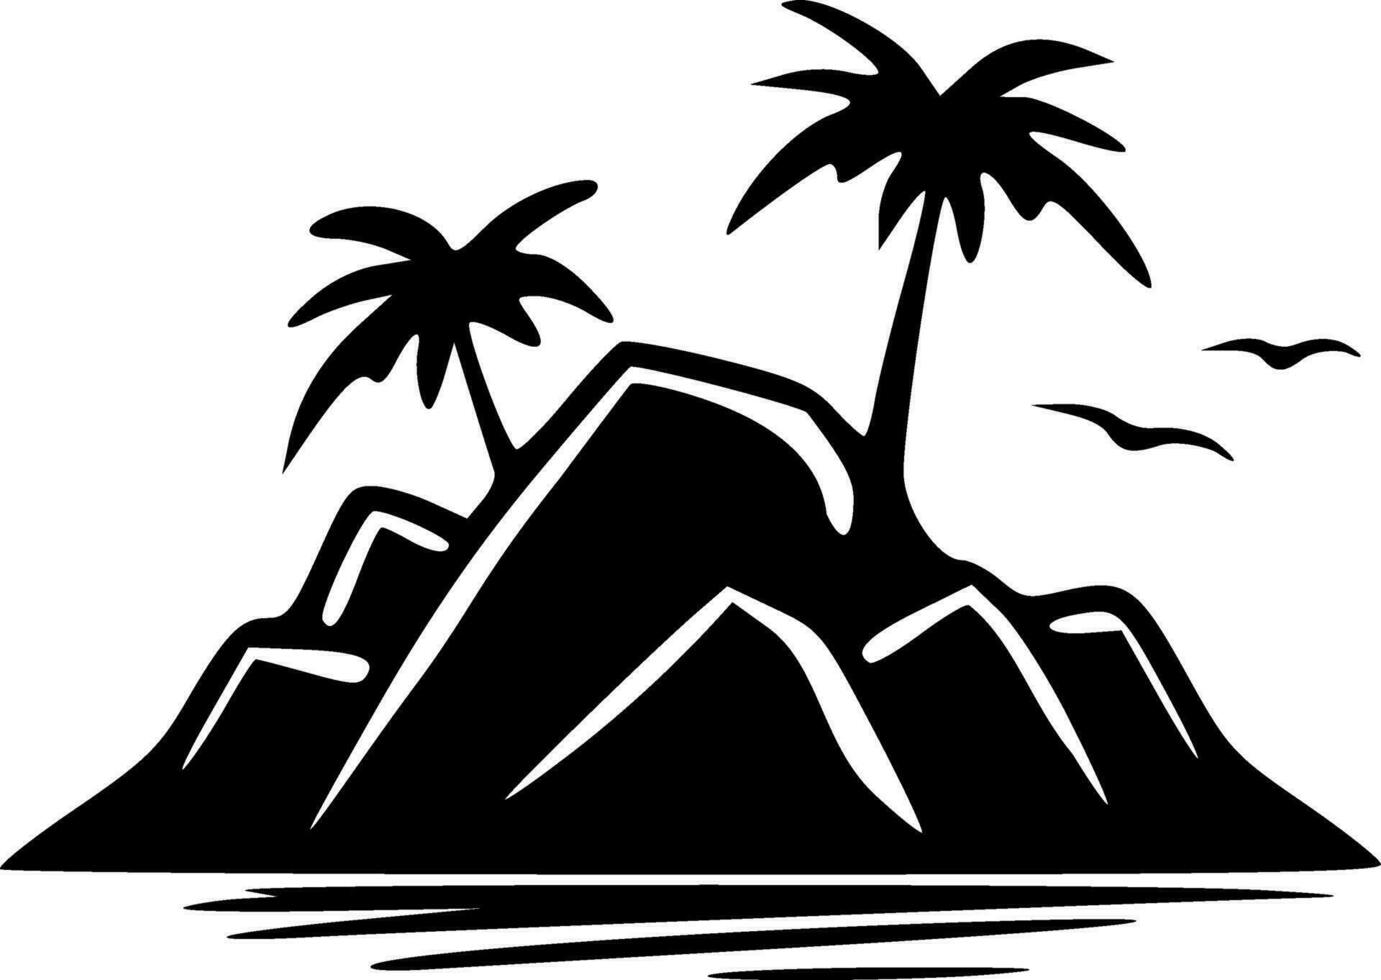 klein eiland met palm bomen met vogelstand vliegend geïsoleerd silhouet vector illustratie